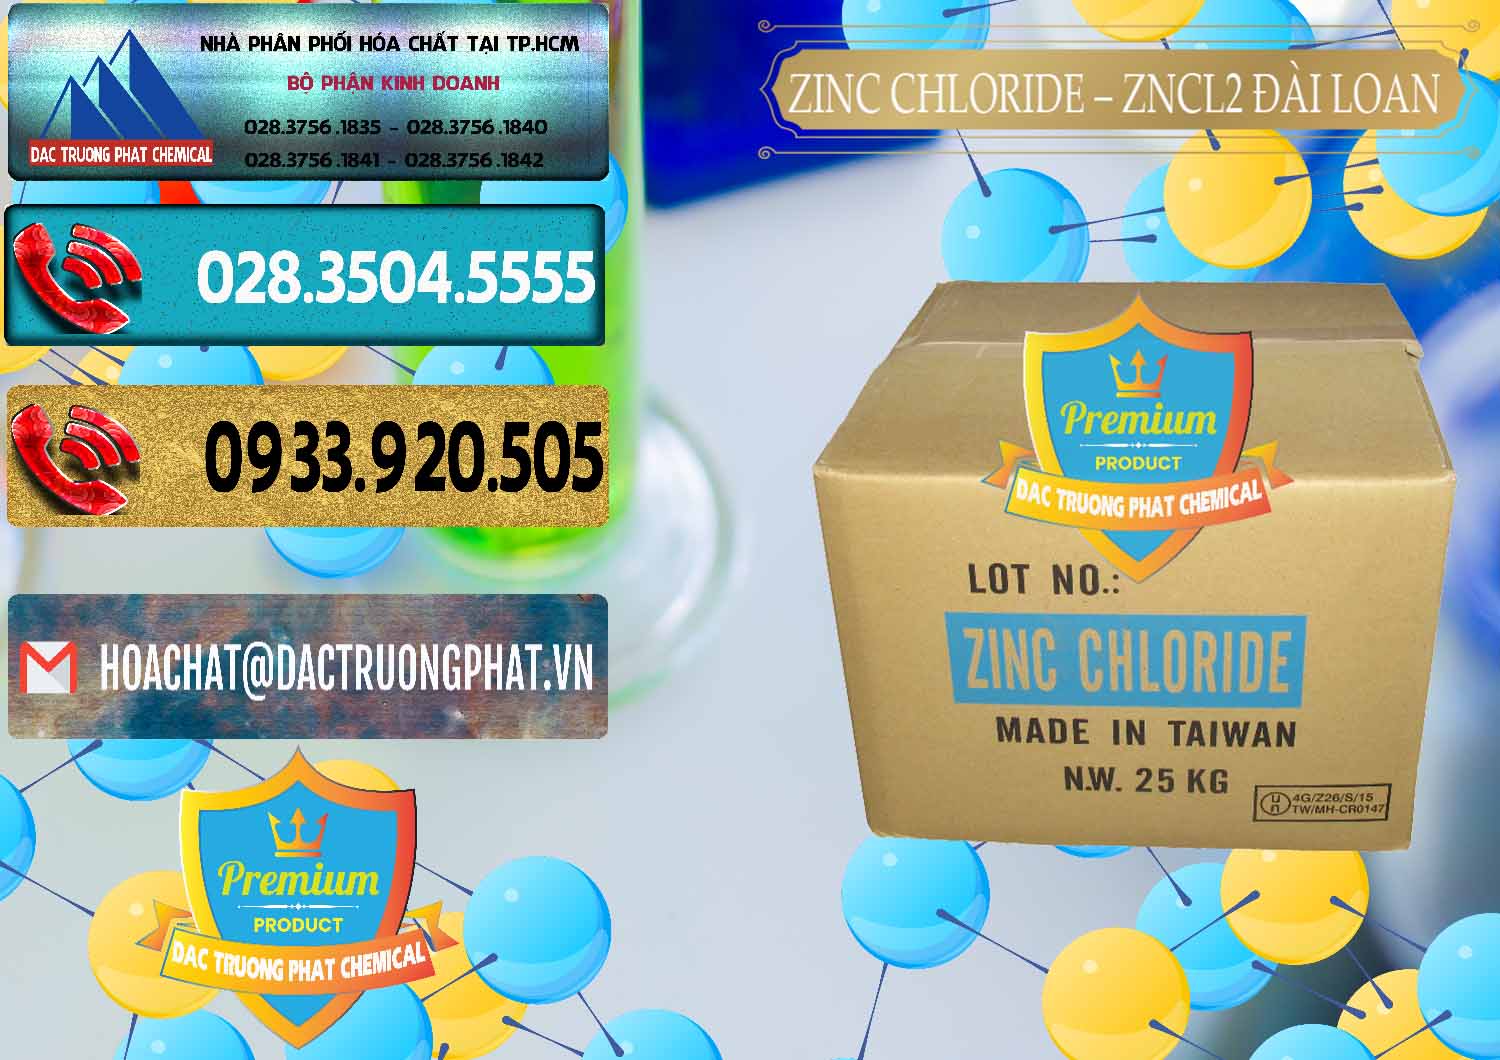 Cty phân phối và bán Zinc Chloride - ZNCL2 96% Đài Loan Taiwan - 0178 - Cty chuyên cung cấp _ nhập khẩu hóa chất tại TP.HCM - hoachatdetnhuom.com